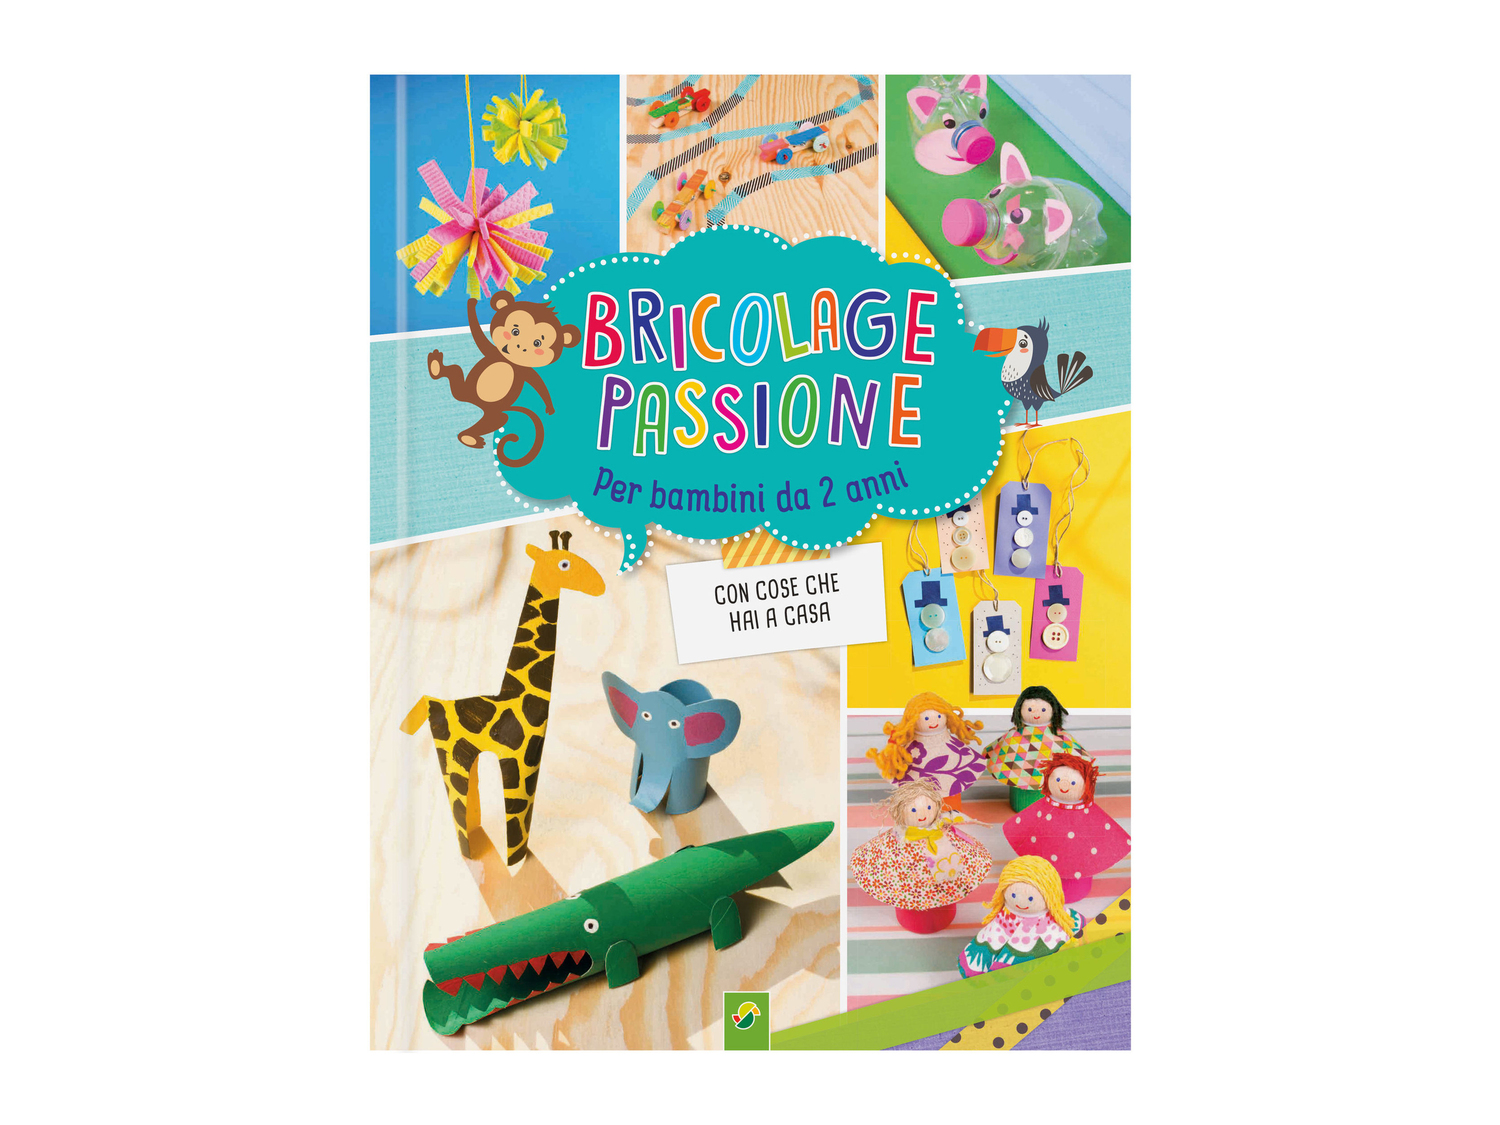 Libro di attività per bambini , prezzo 4.99 &#8364; 
- Per disegnare/colorare, ...